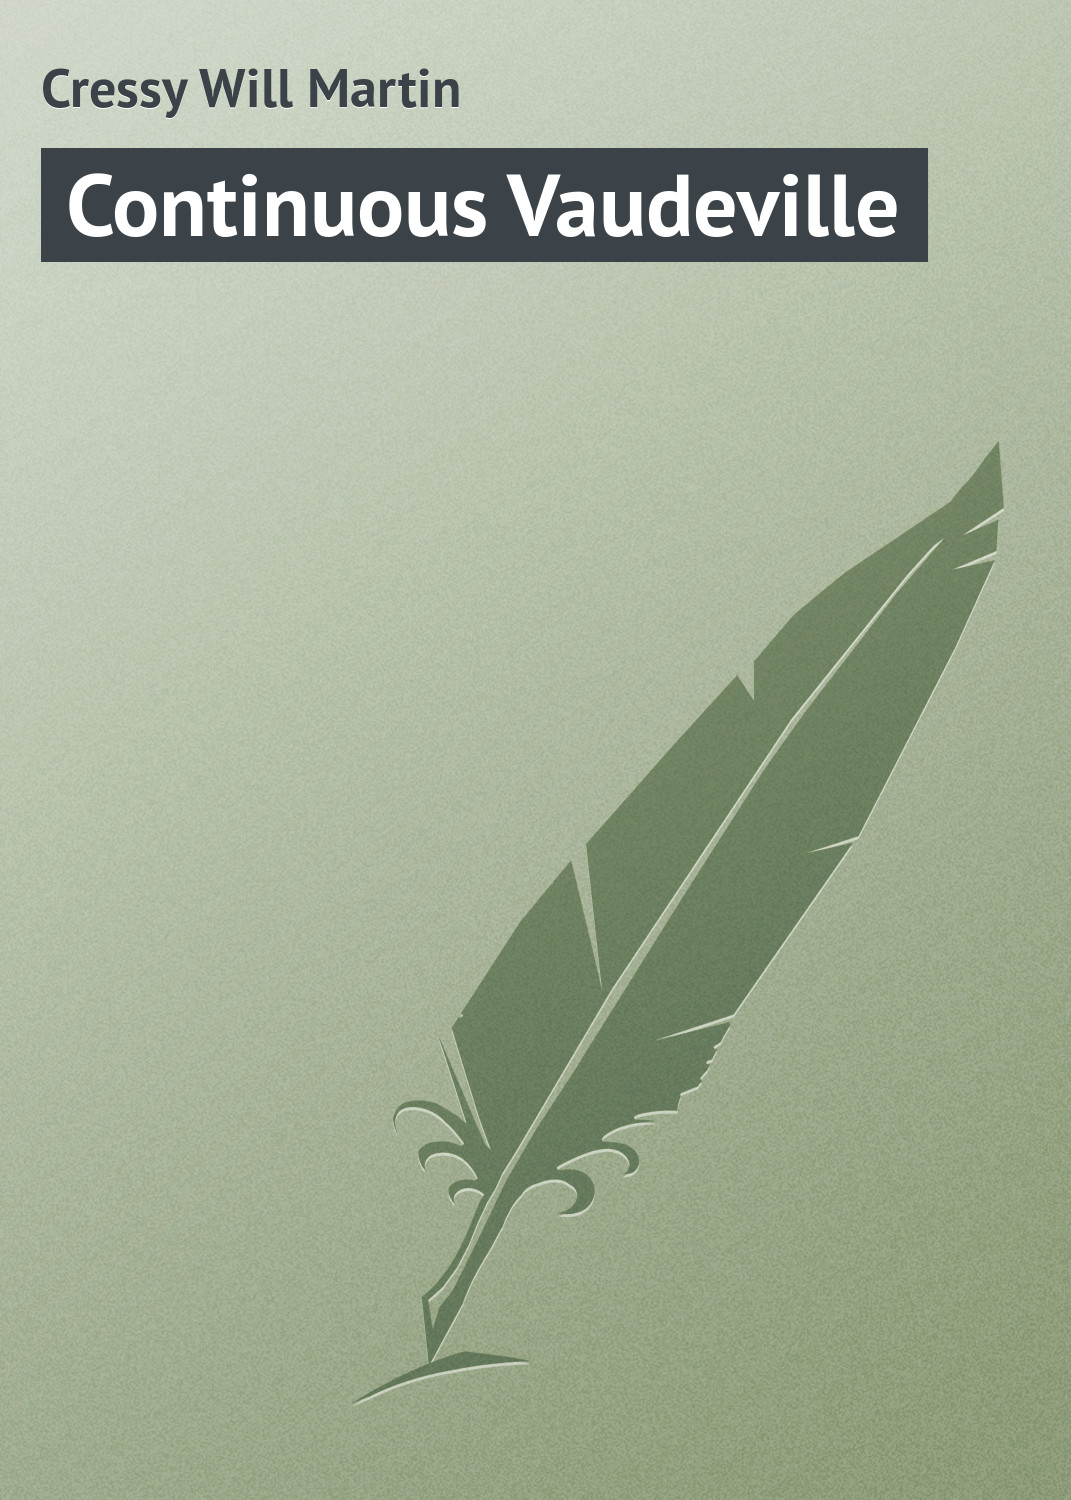 Книга Continuous Vaudeville из серии , созданная Will Cressy, может относится к жанру Зарубежная классика, Зарубежный юмор. Стоимость электронной книги Continuous Vaudeville с идентификатором 23165259 составляет 5.99 руб.